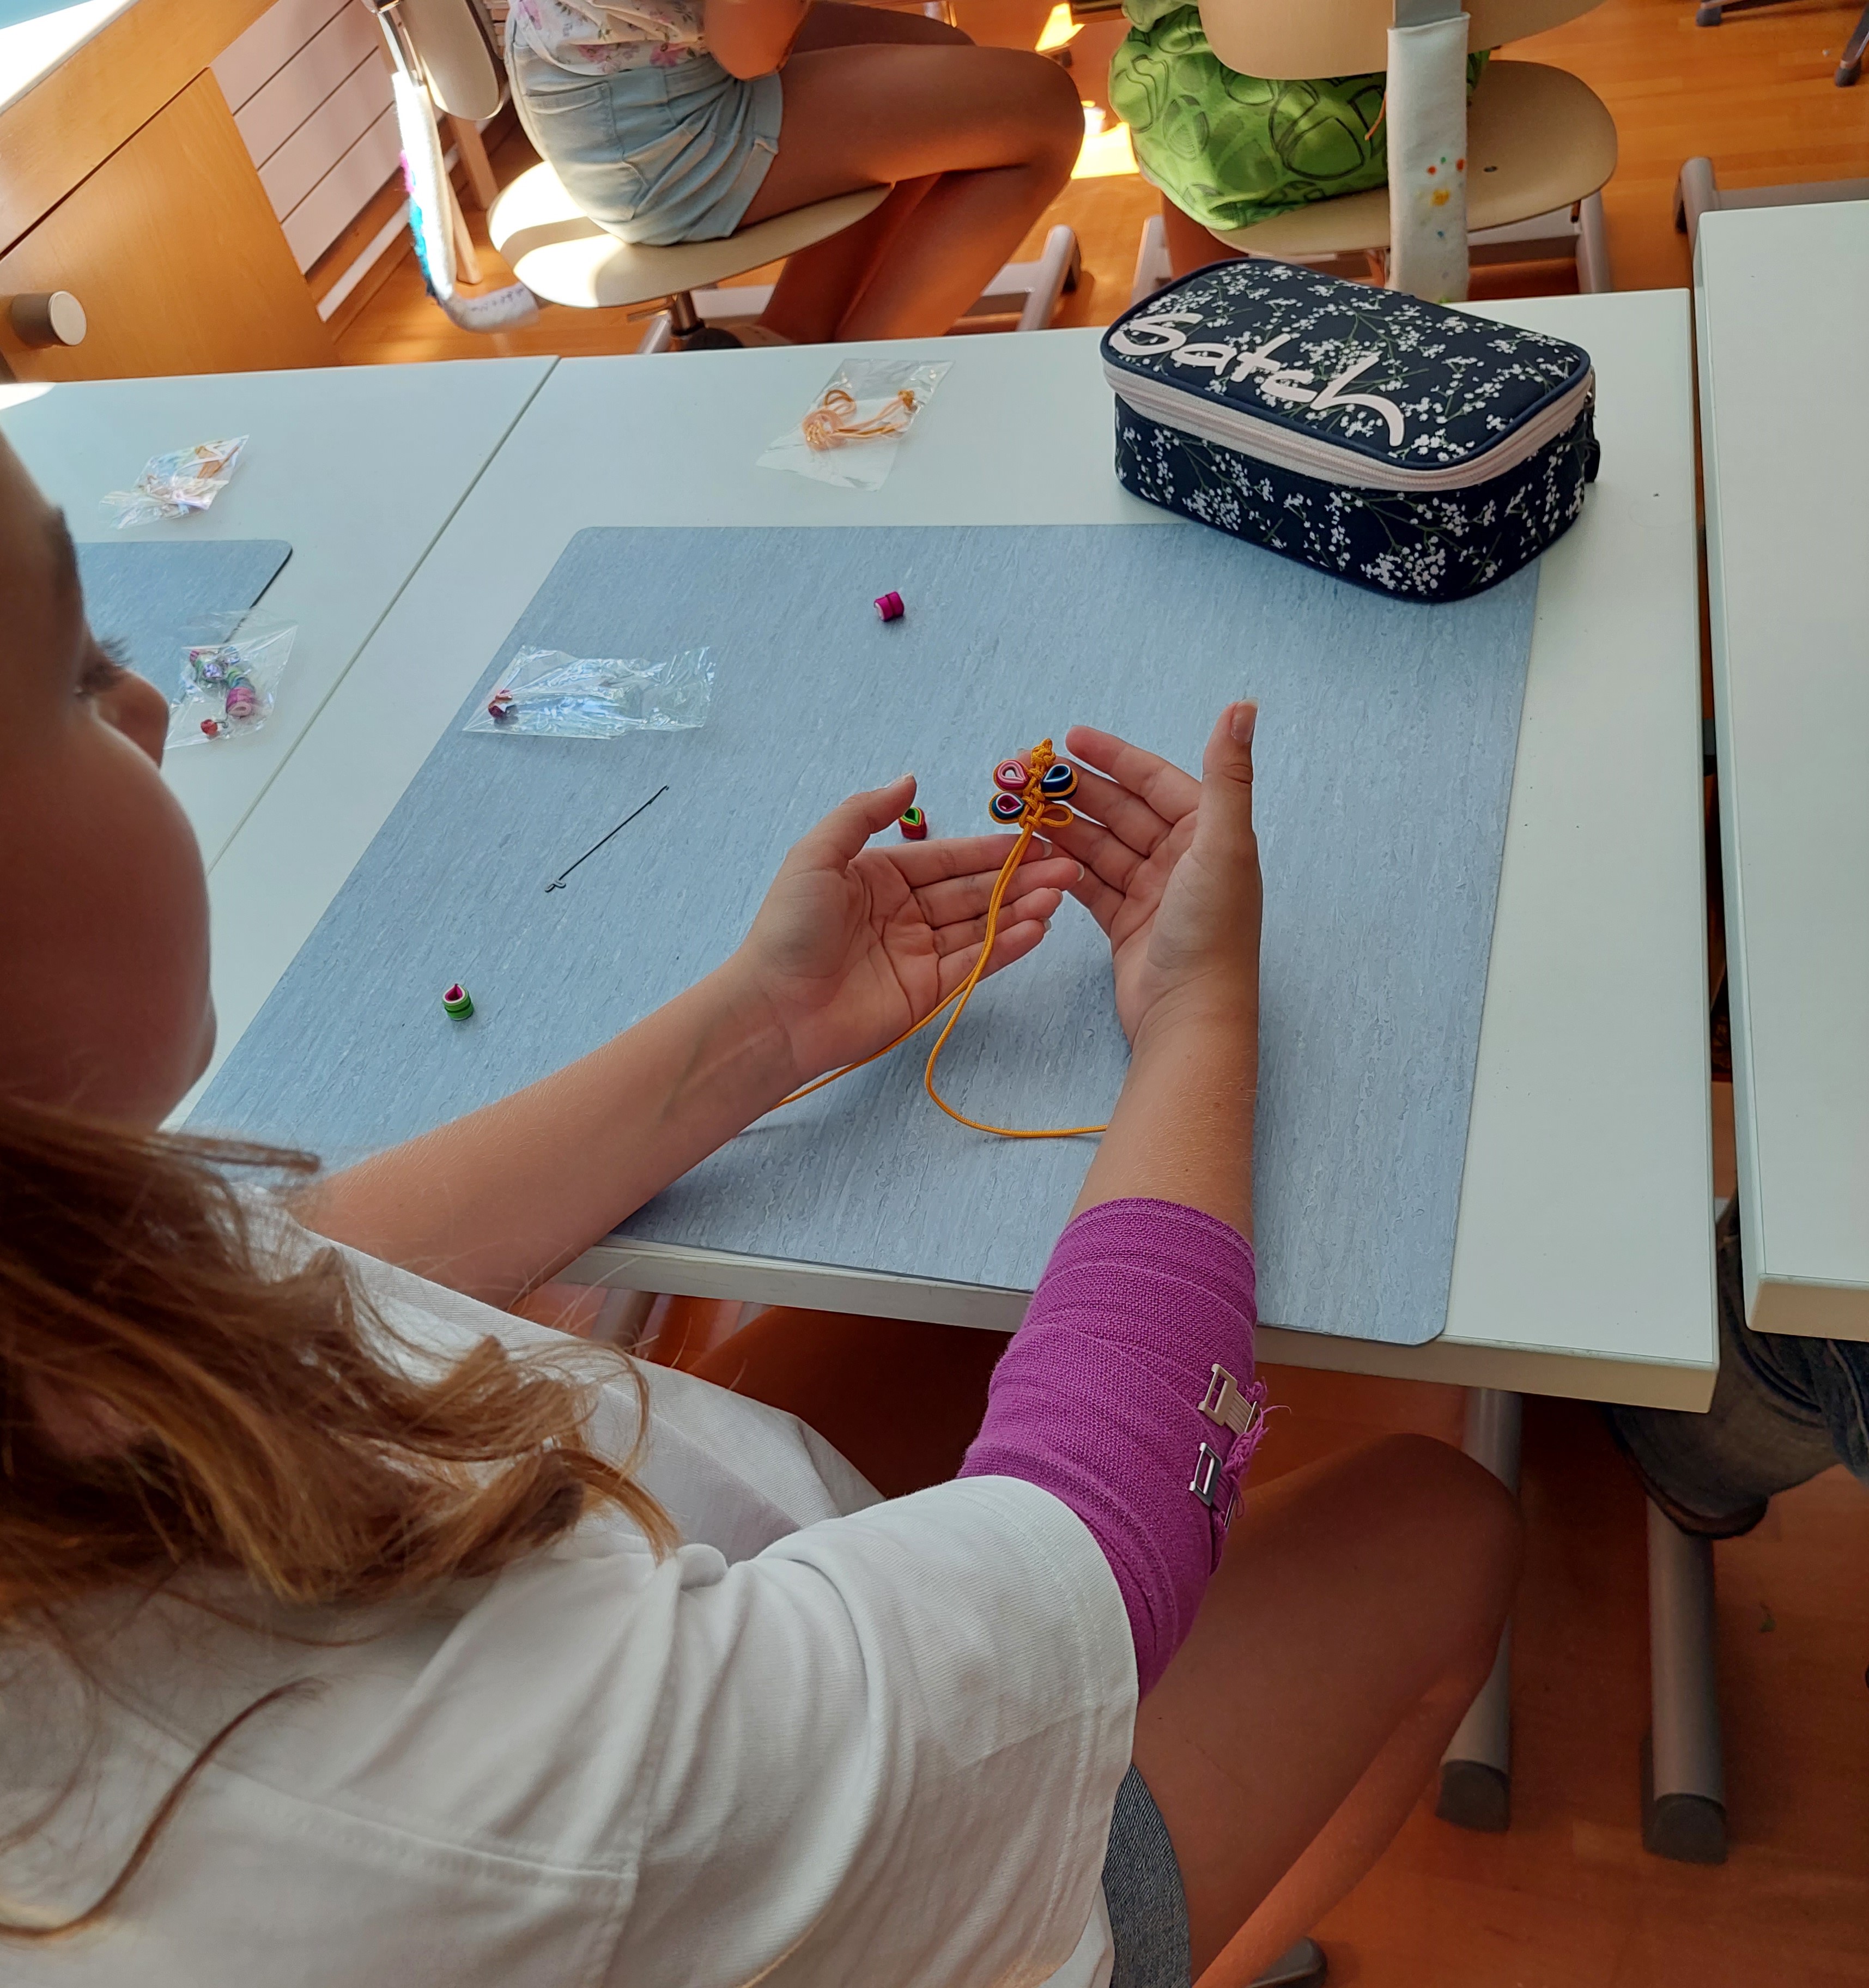 < 스위스 감스회플리초등학교에서 선보인 '매듭공예 수업' - 출처: 통신원 촬영 >